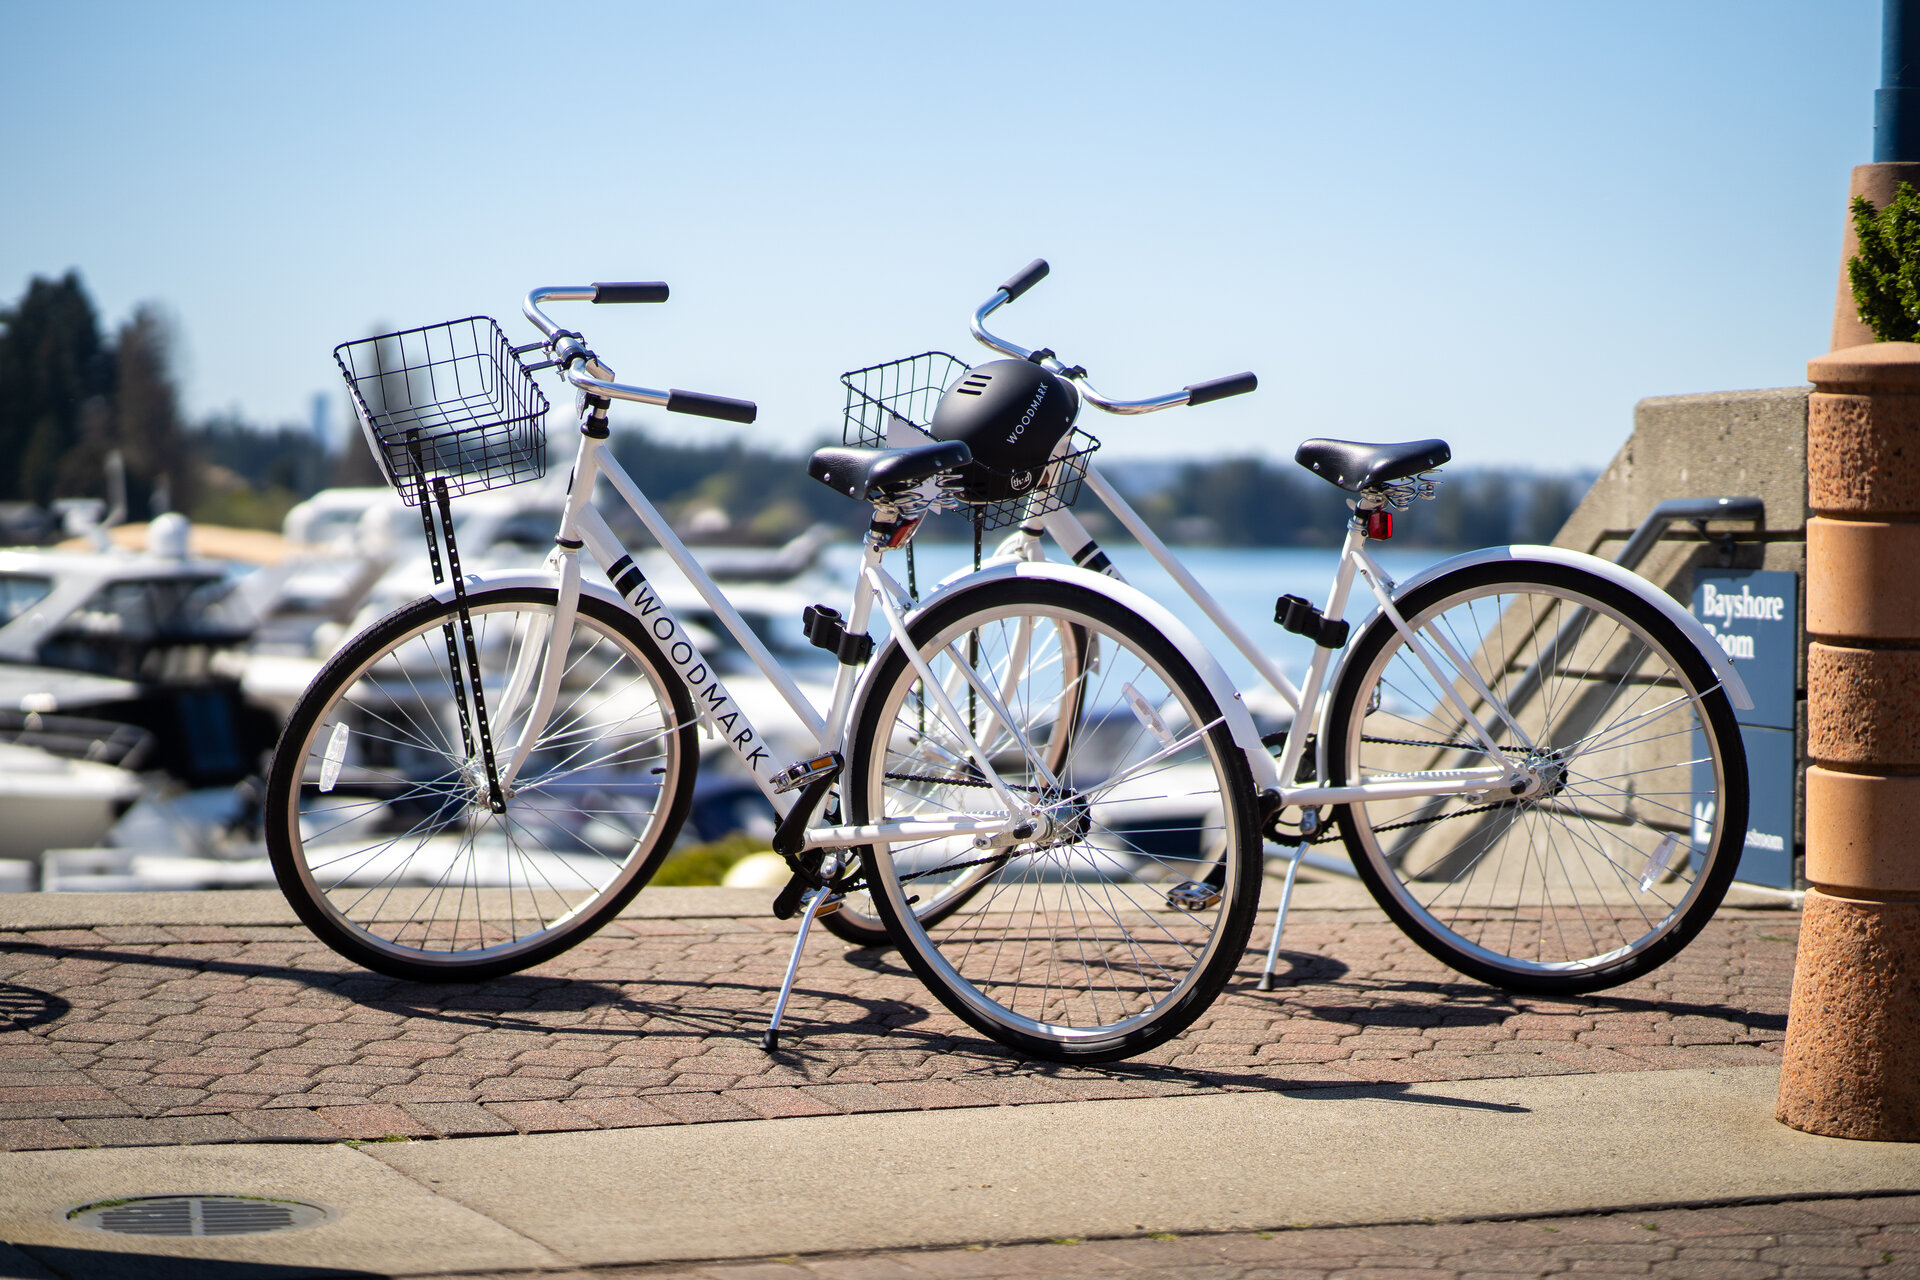 Bikes parked on the shore of lake washington